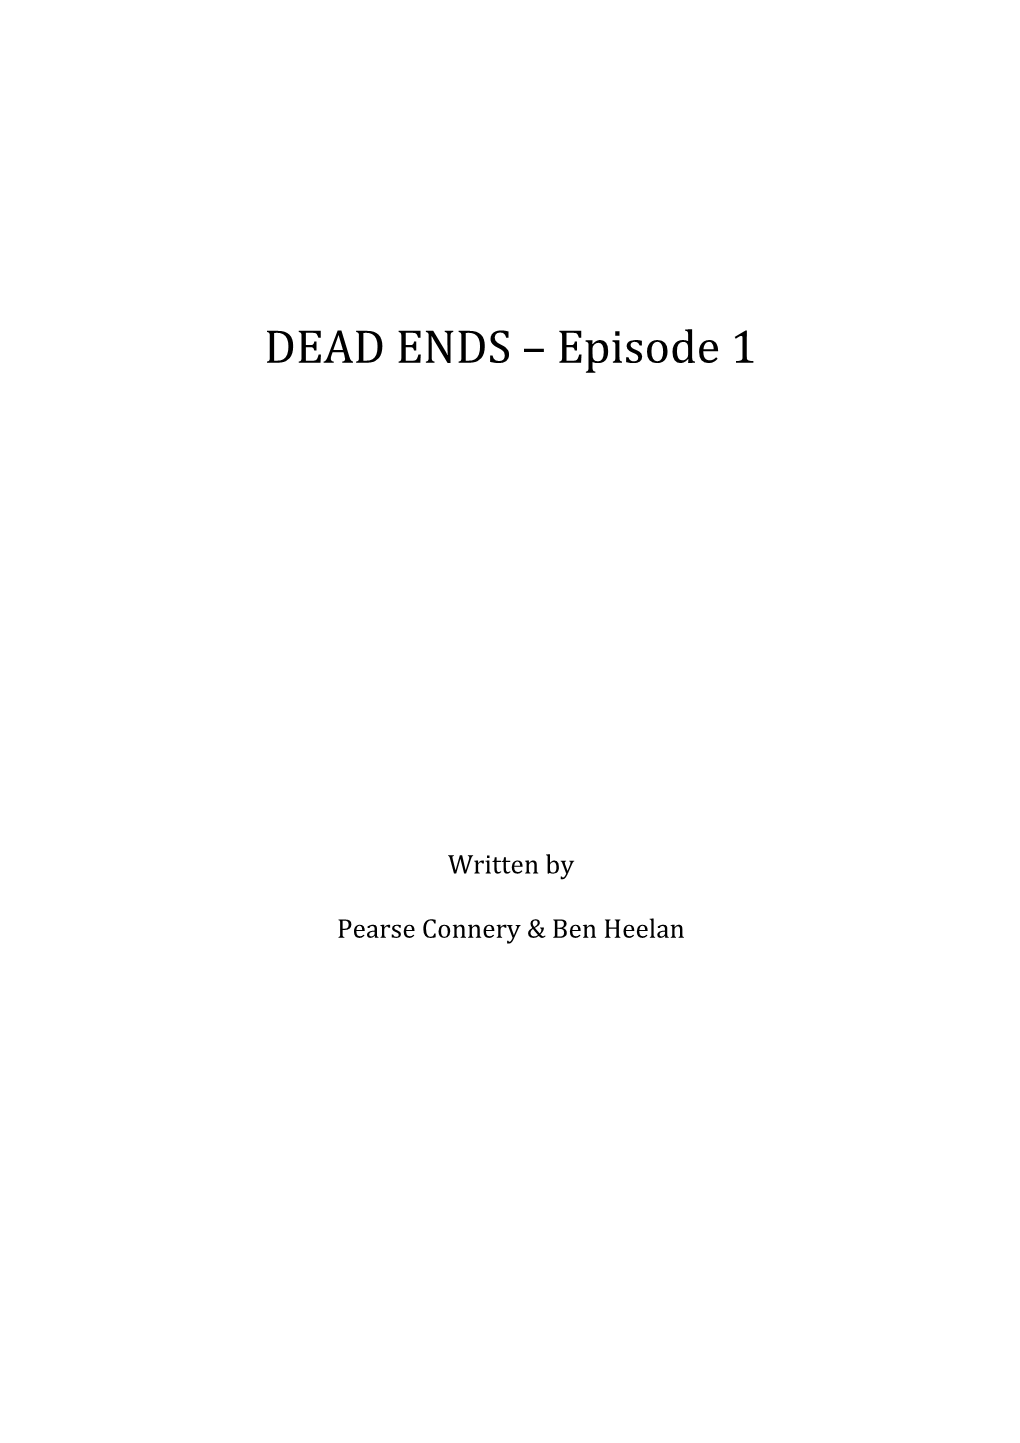 DEAD ENDS Episode 1